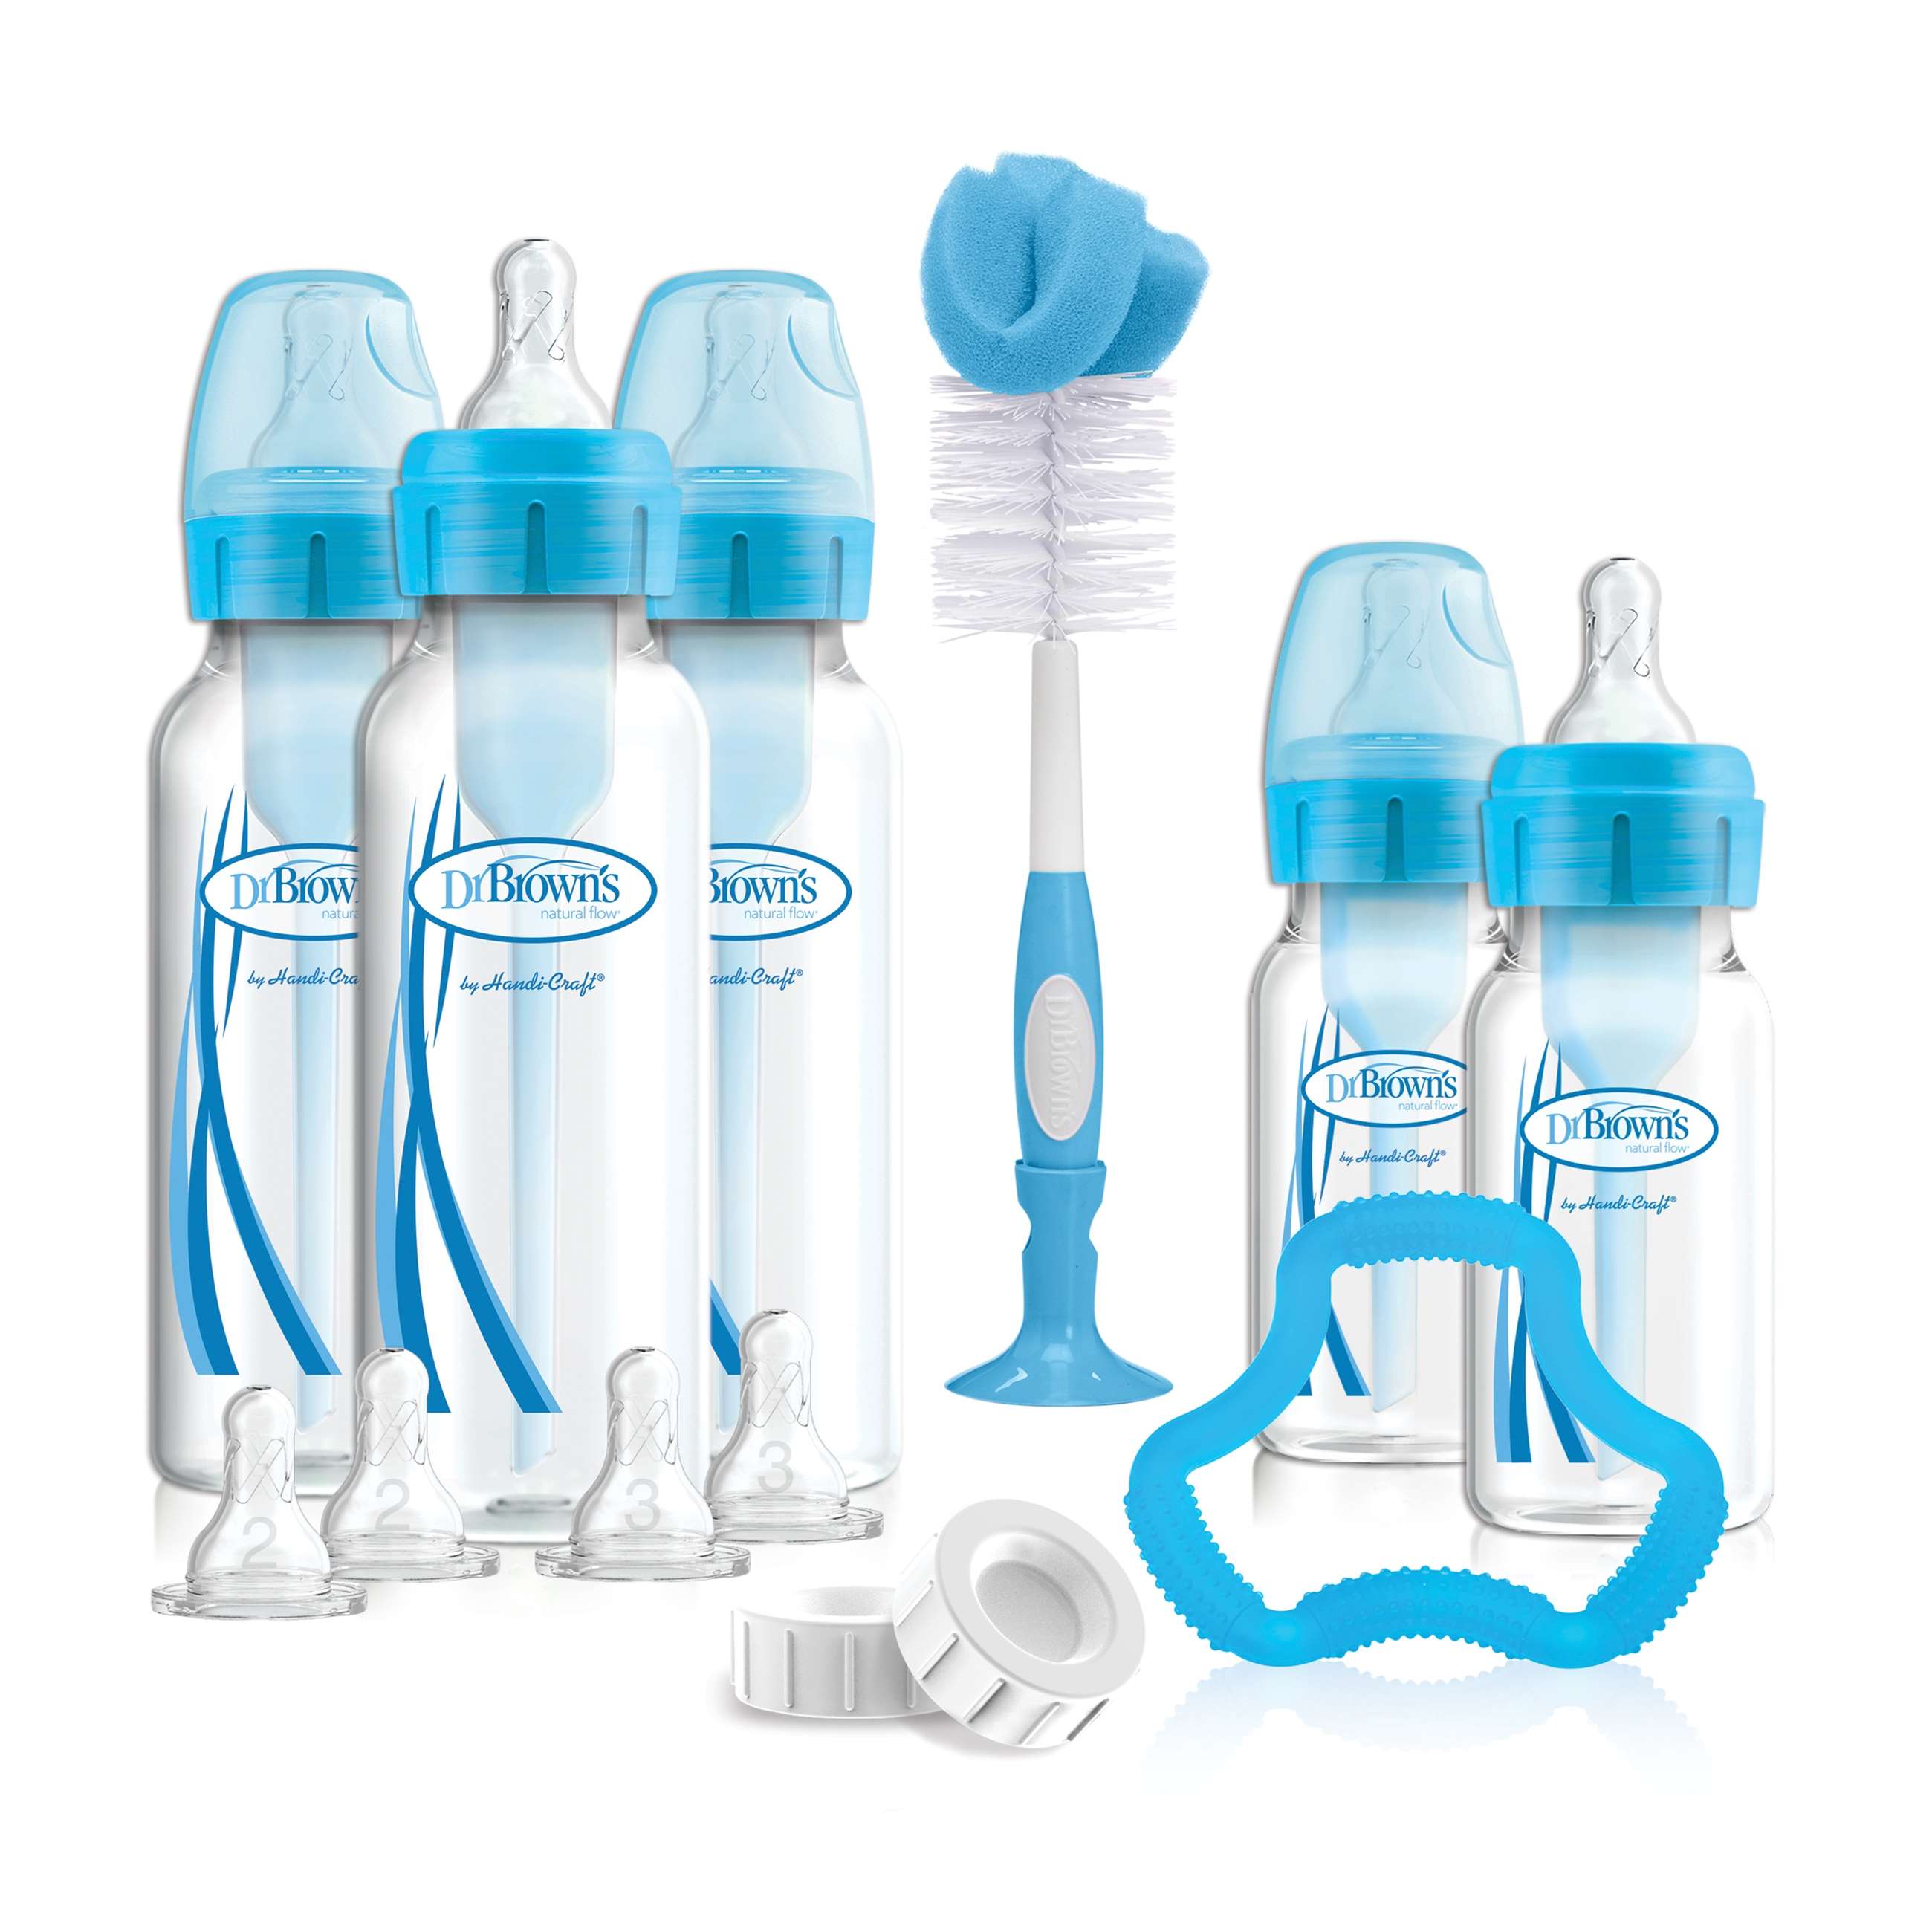 sb05405-esx_product_options+_narrow_bottle_gift_set_blue